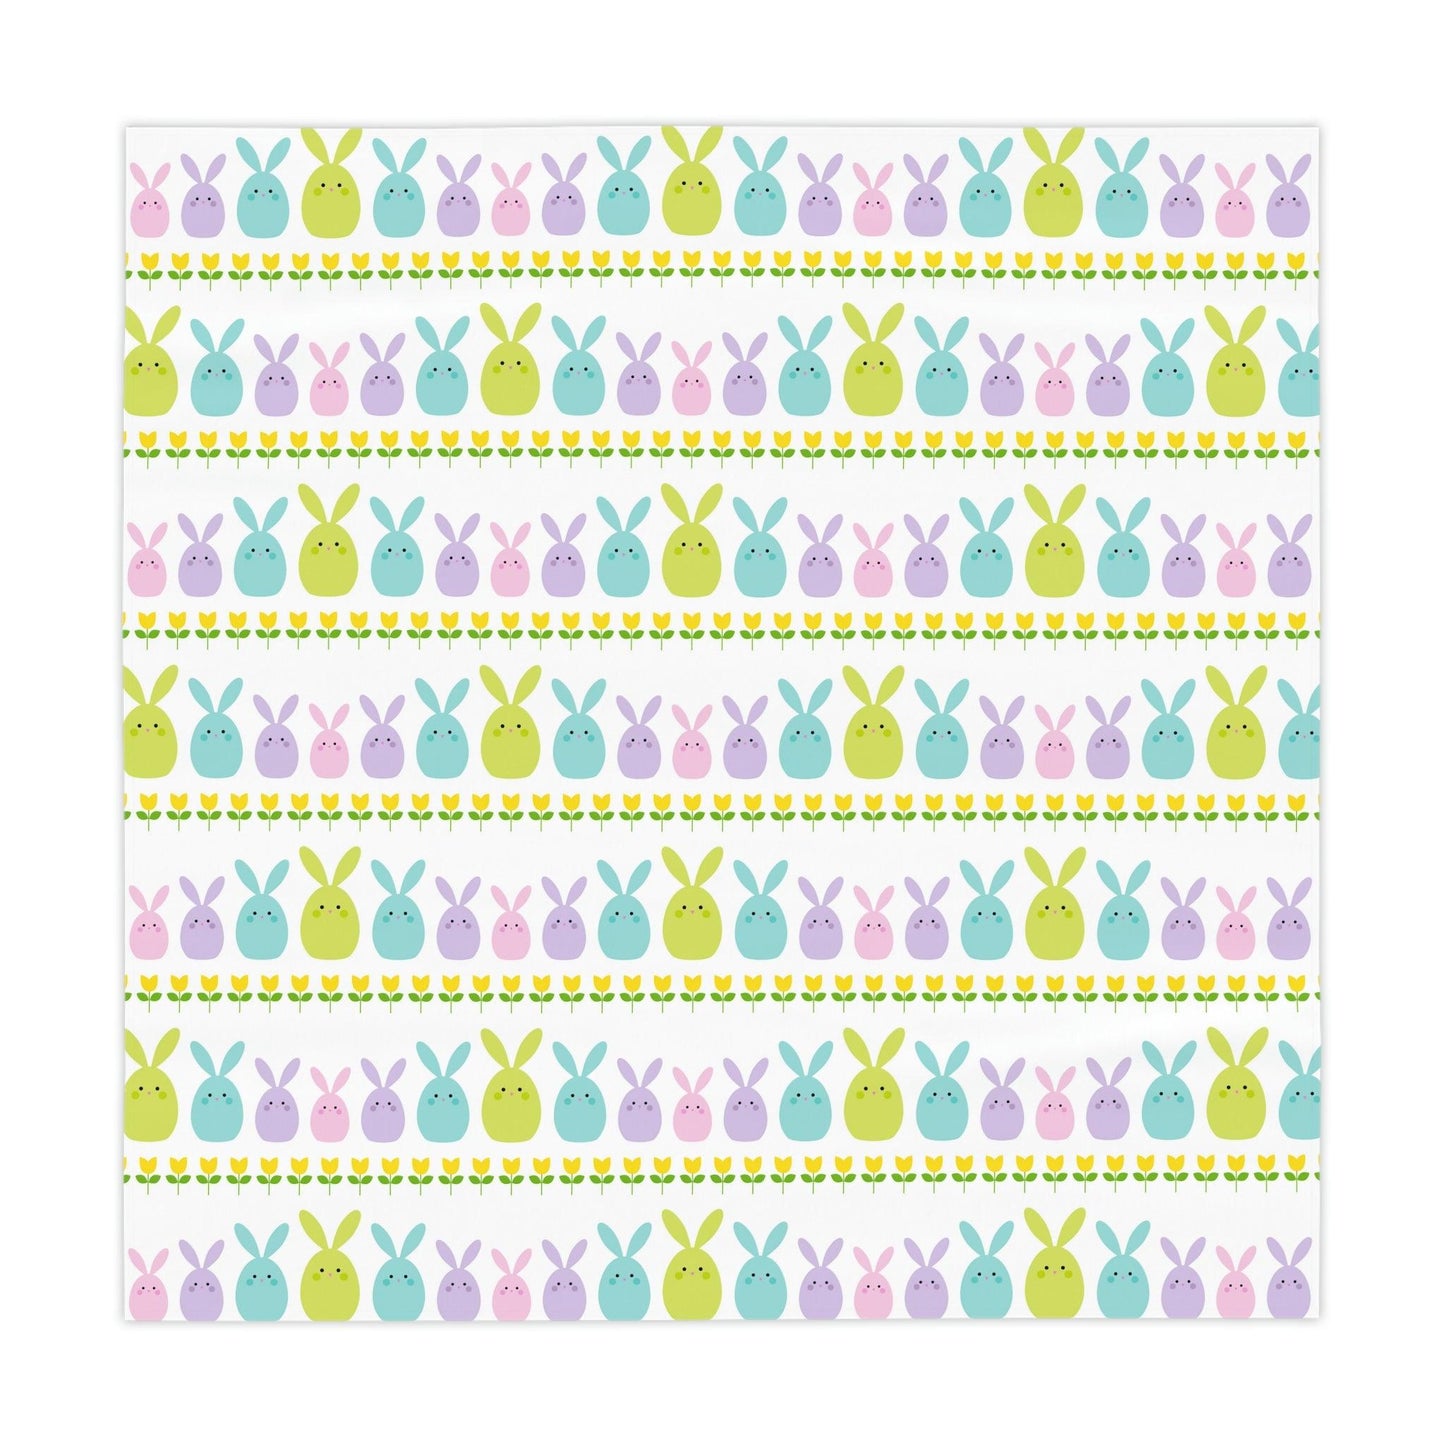 Cute Bunnies Whimsical Easter Tablecloth | lovevisionkarma.com